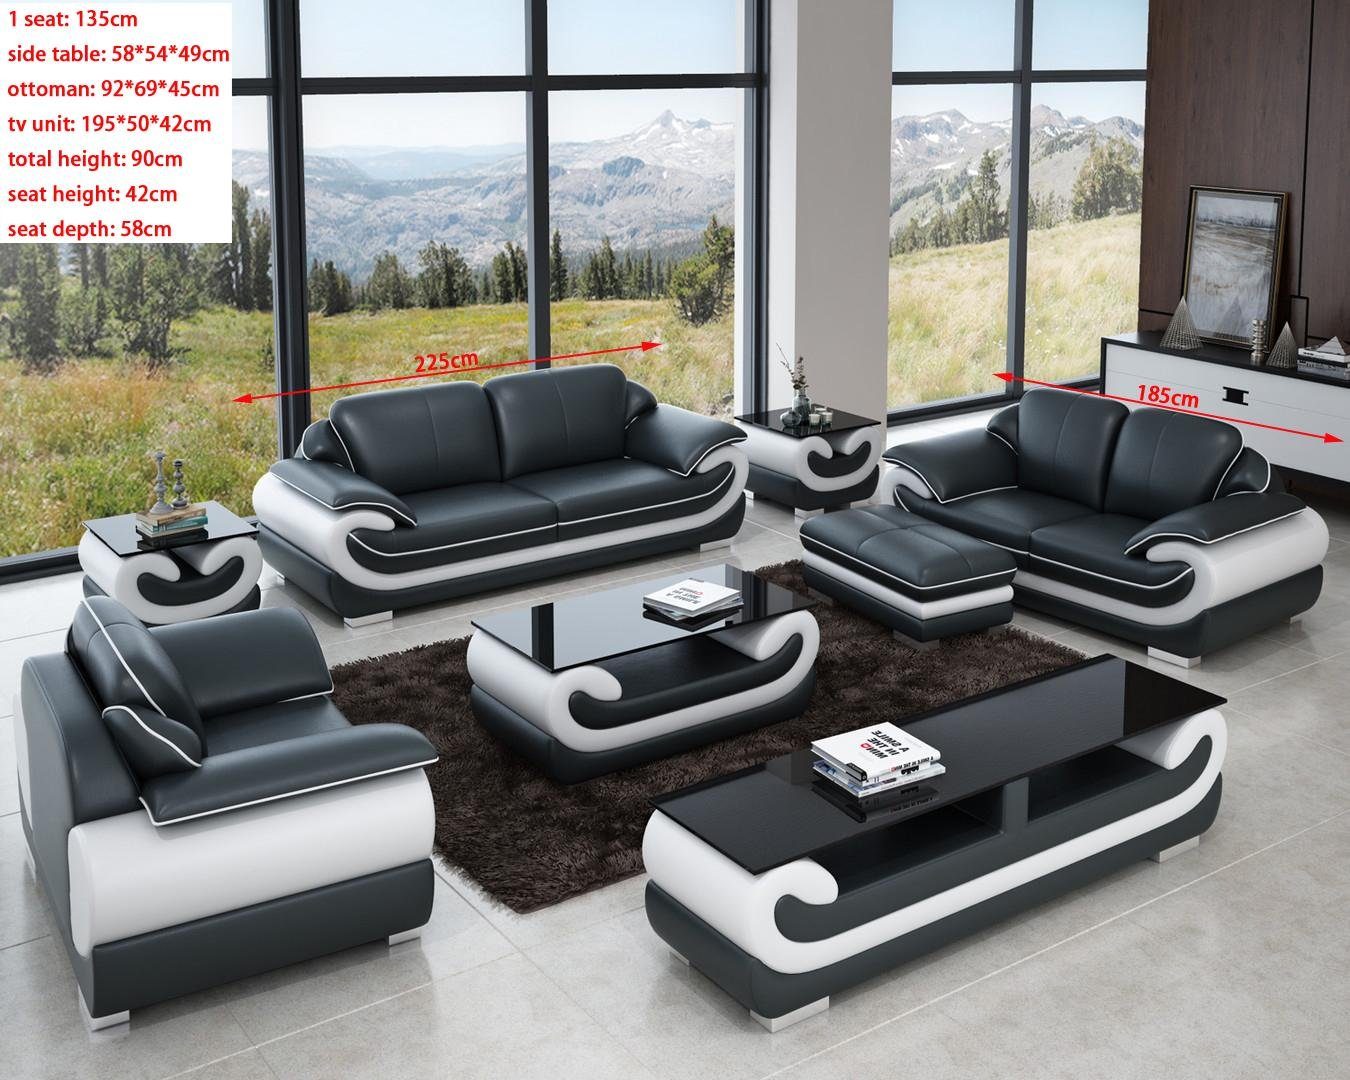 JVmoebel Sofa Ledersofa Sitzer Wohnlandschaft Made Garnitur 3+1+1 Europe Couch Grau/Weiß in Design